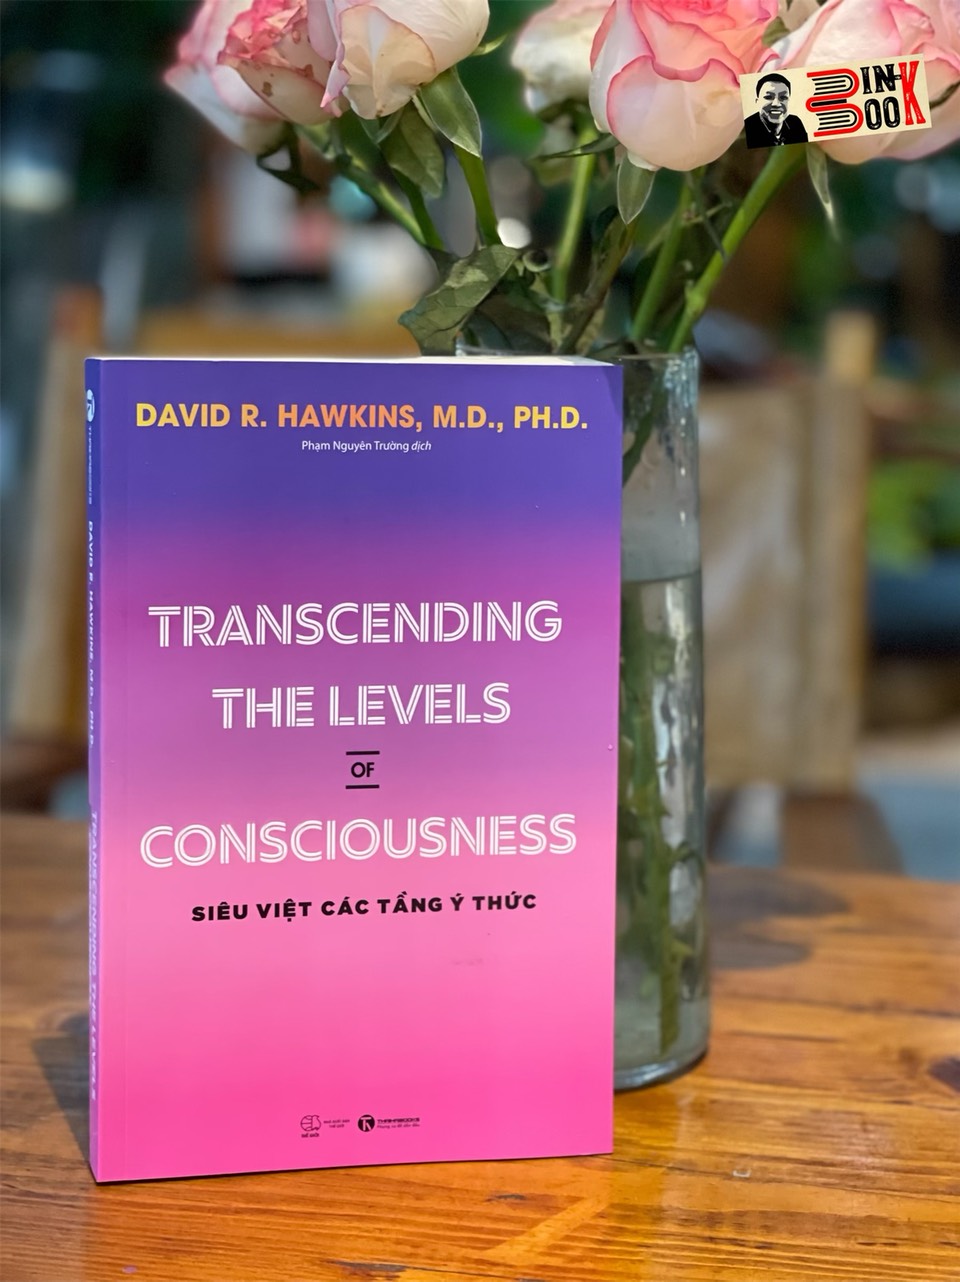 TRANSCENDING THE LEVELS OF CONSCIOUSNESS – SIÊU VIỆT CÁC TẦNG Ý THỨC- David R. Hawkins, M.D., Ph.D-  Phạm Nguyên Trường dịch -Thái Hà – NXB Thế giới